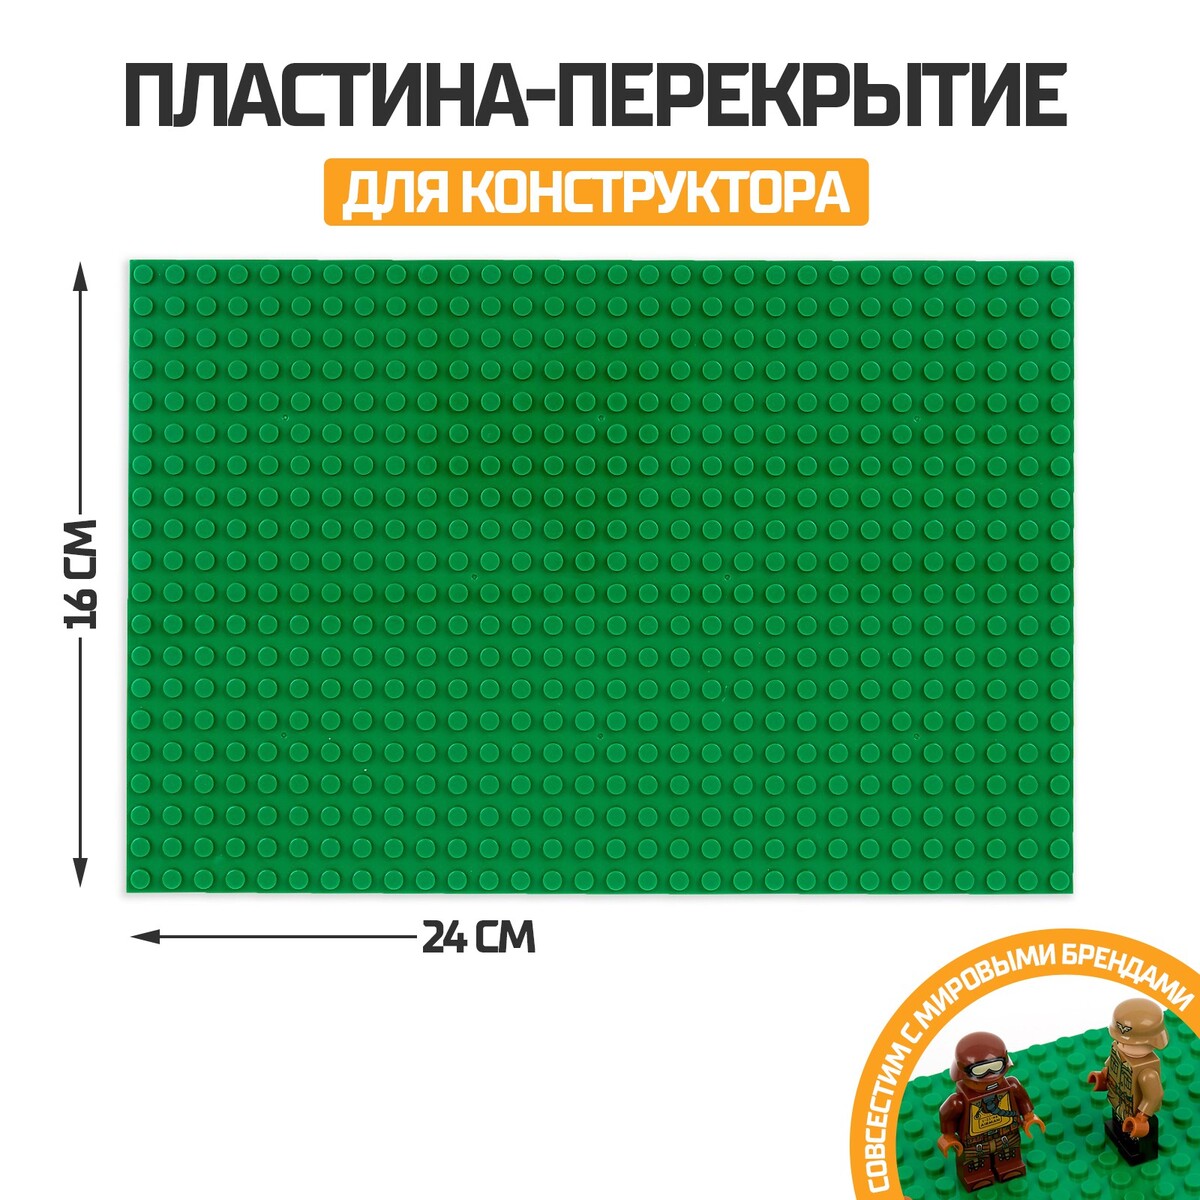 Пластина-перекрытие для конструктора, 16 х 24 см, цвет зеленый браслет пластина